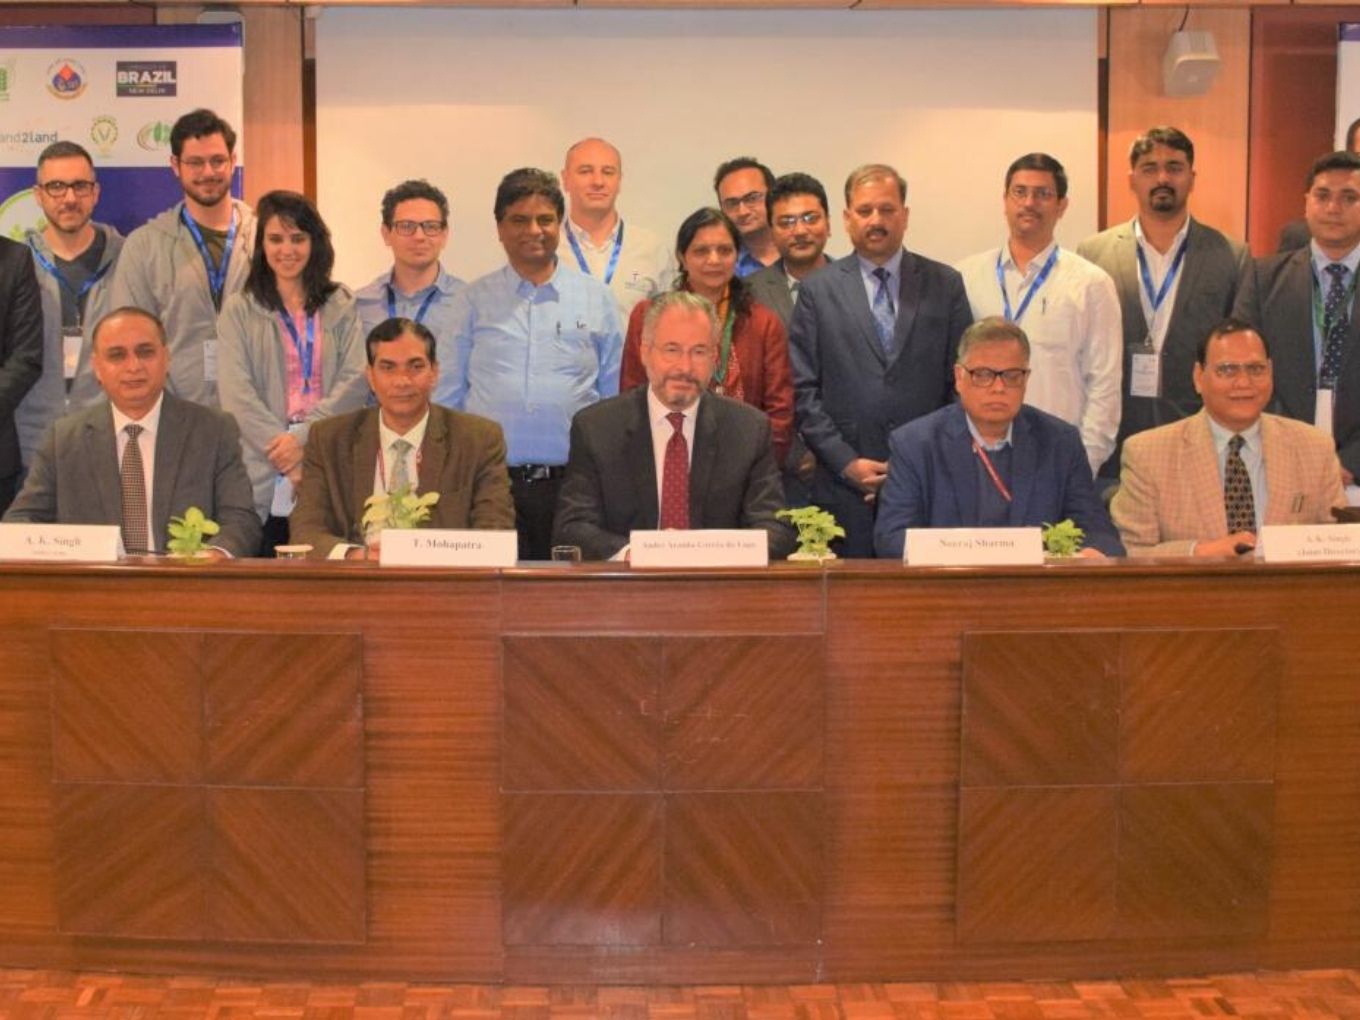 ICAR Announces India Brazil Cross-Border Incubator For Agritech Startups